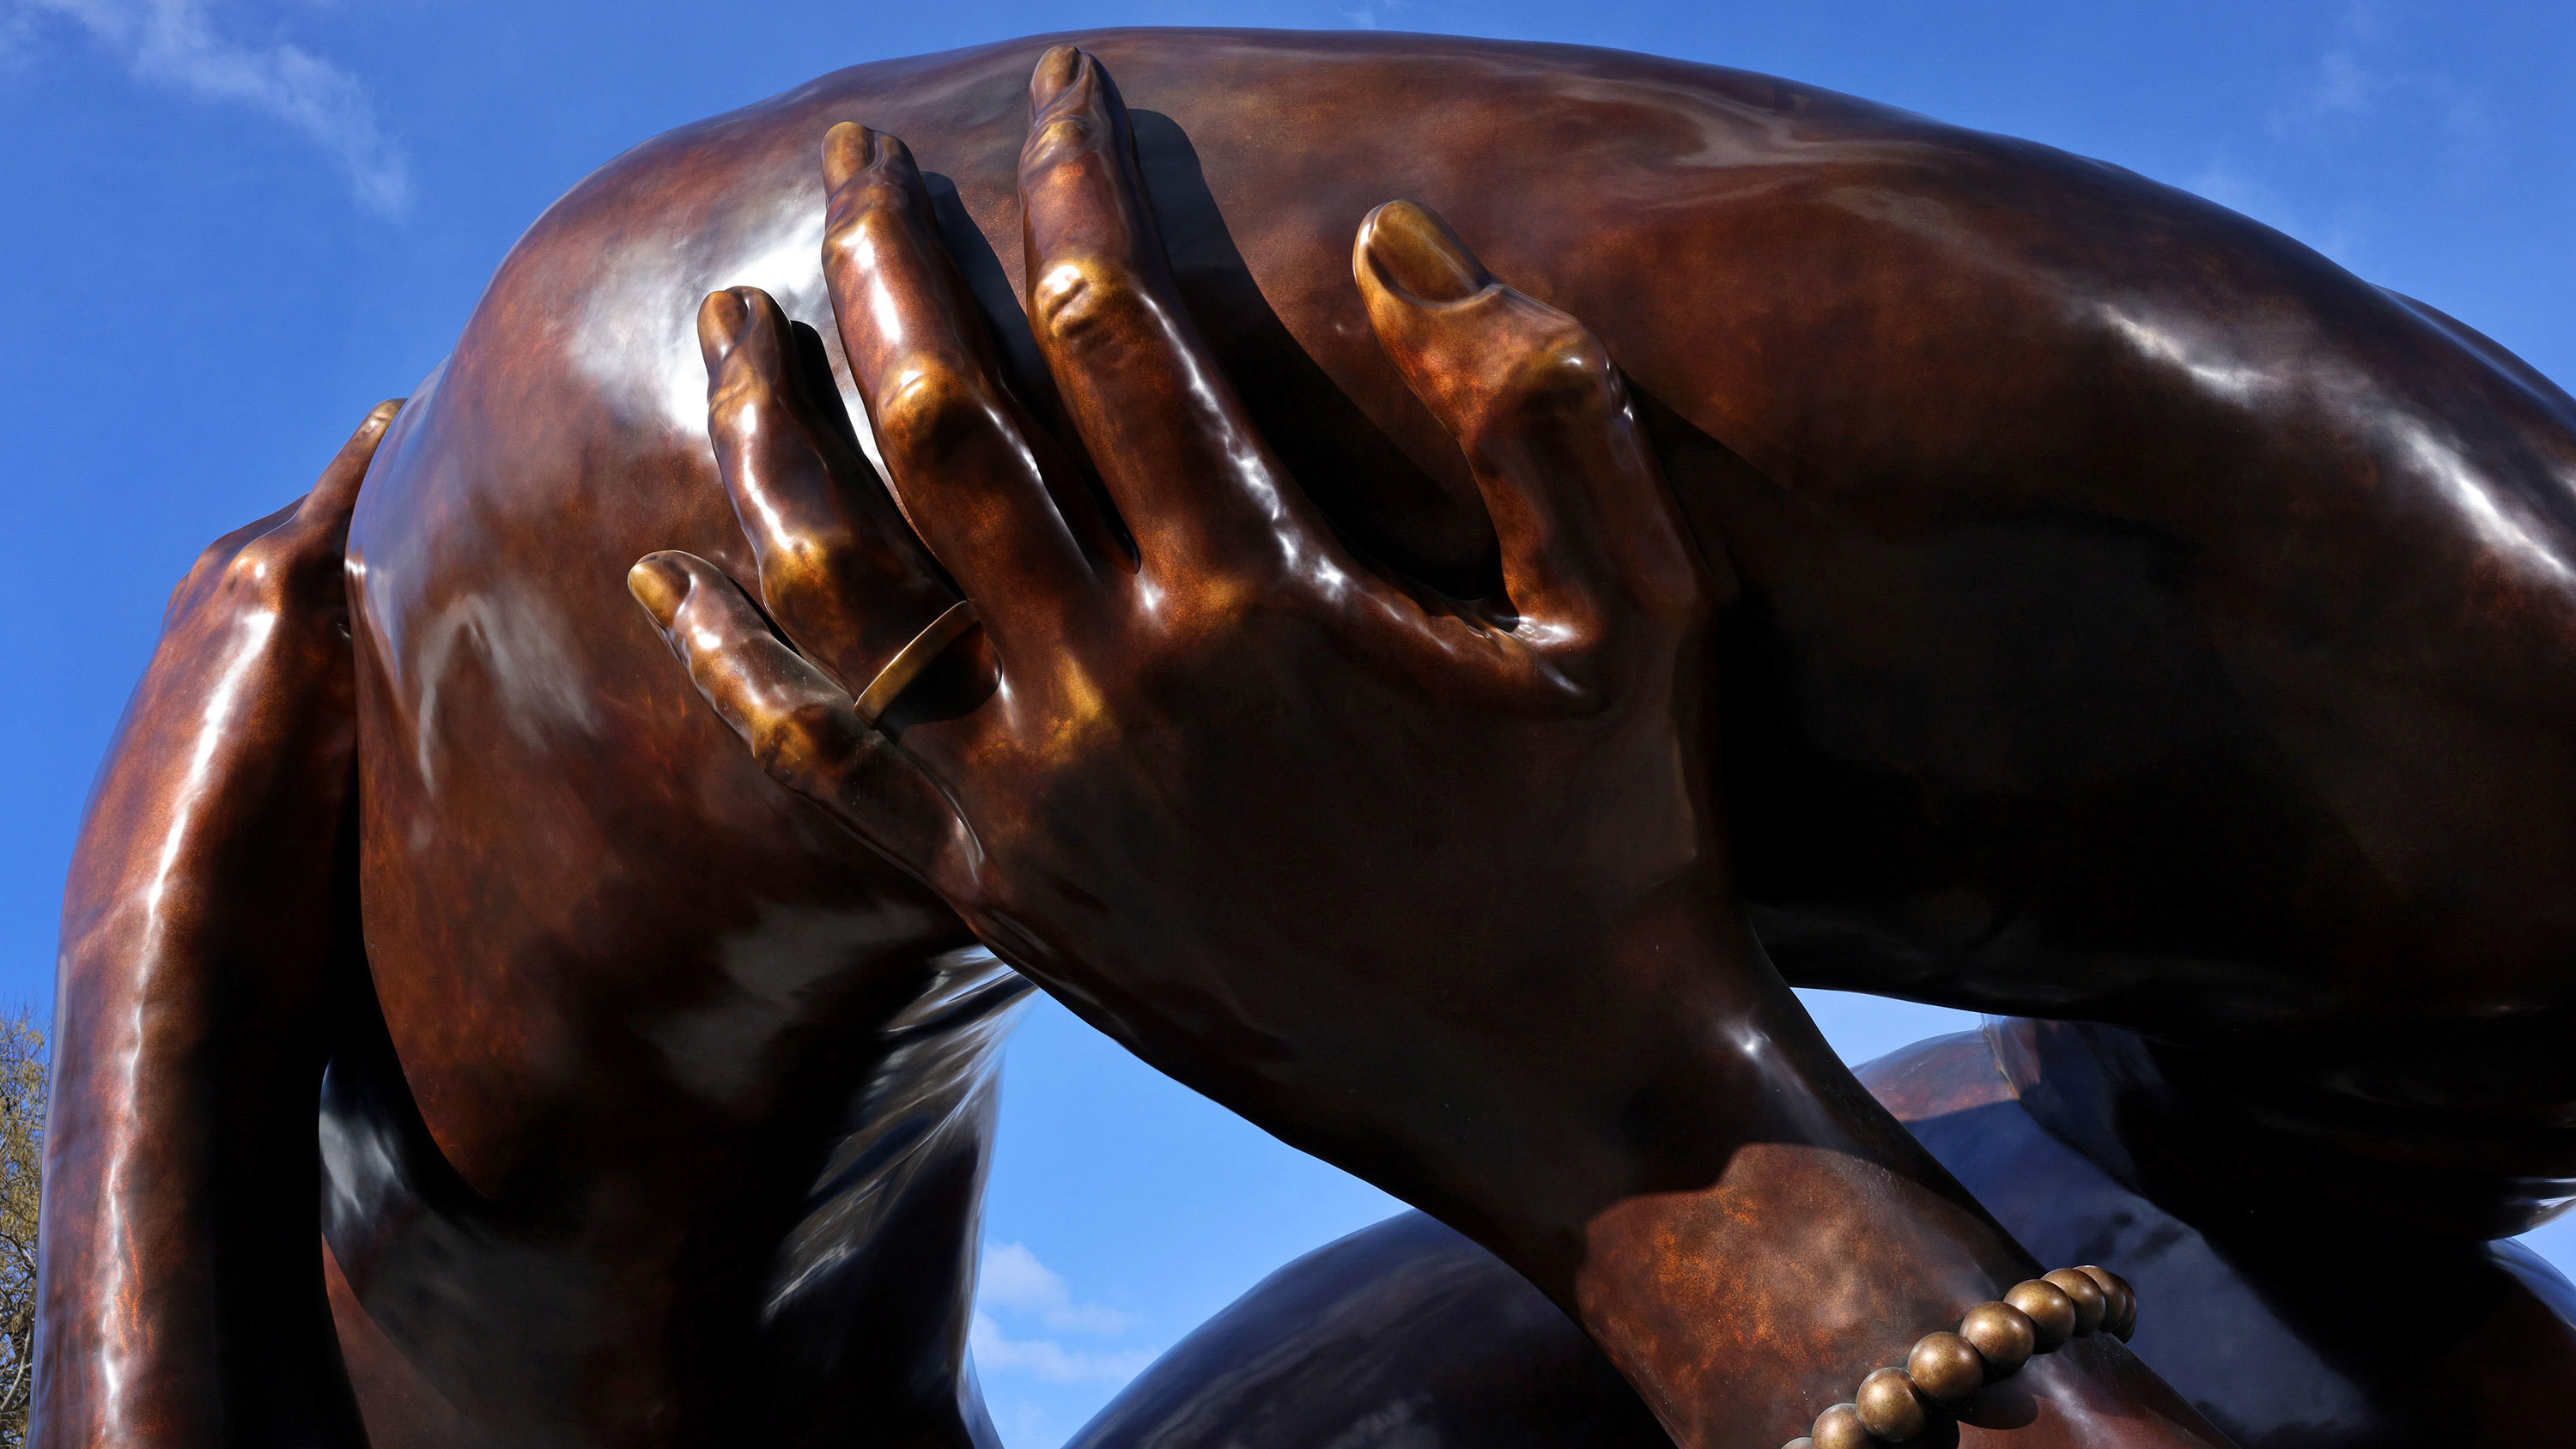 Monumento en honor a Martin Luther King provoca burlas y críticas en EE.UU.